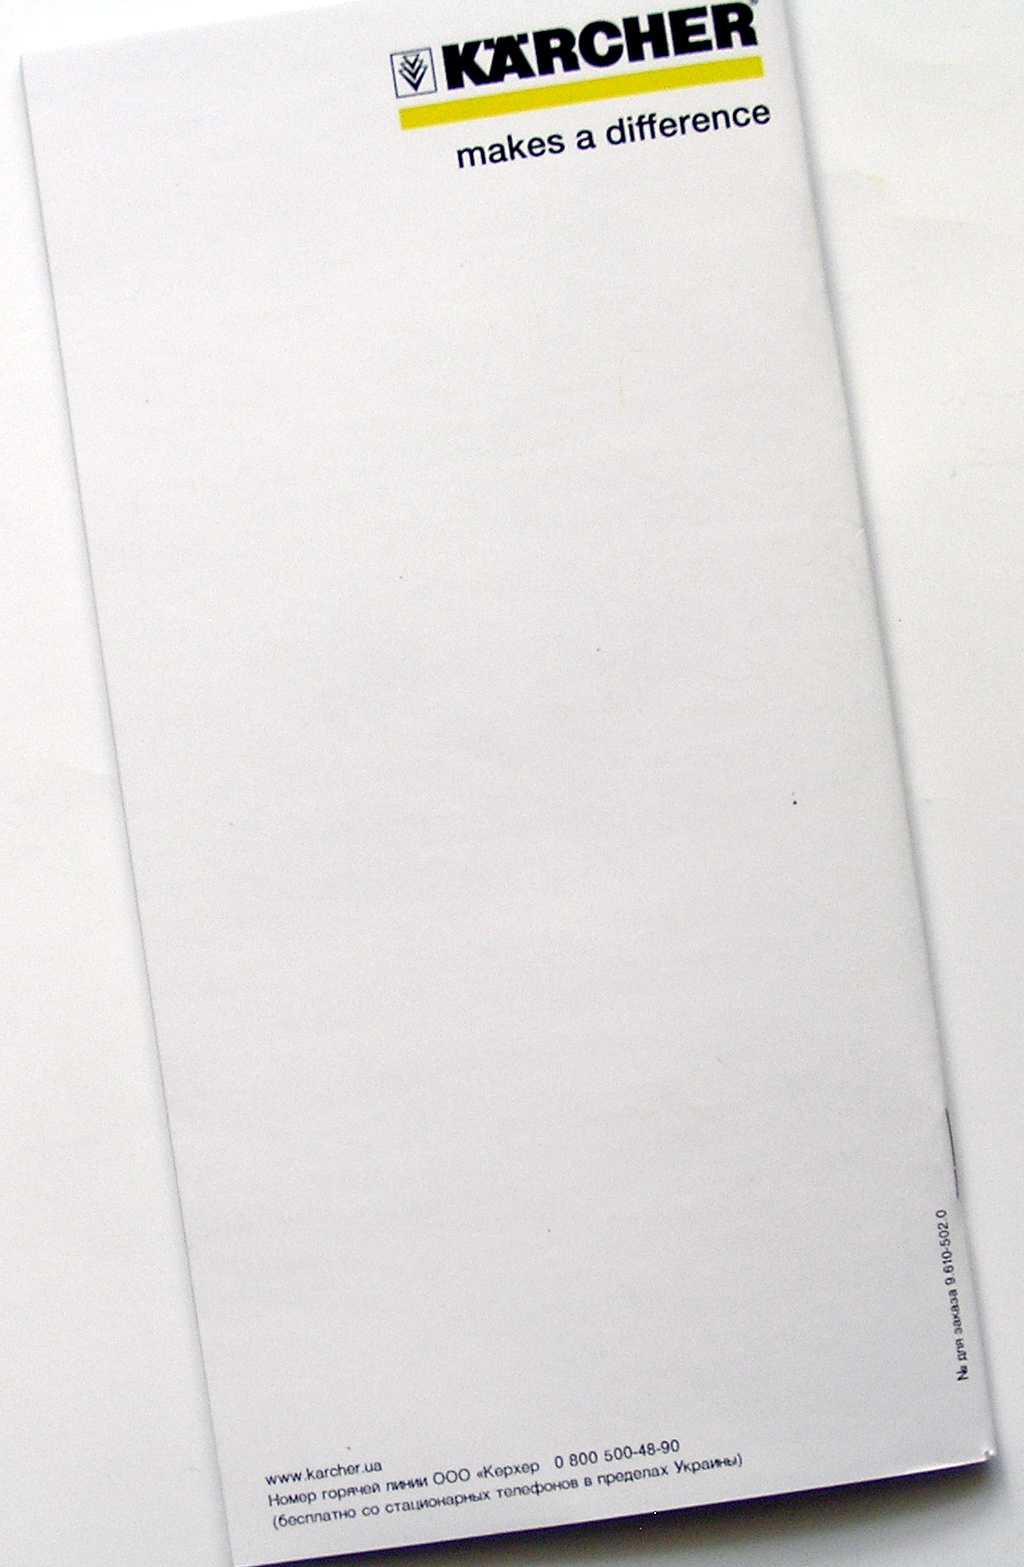 Друк каталогів «Karcher. Home Line». Поліграфія друкарні Макрос, виготовлення каталогів, специфікація 964967-5